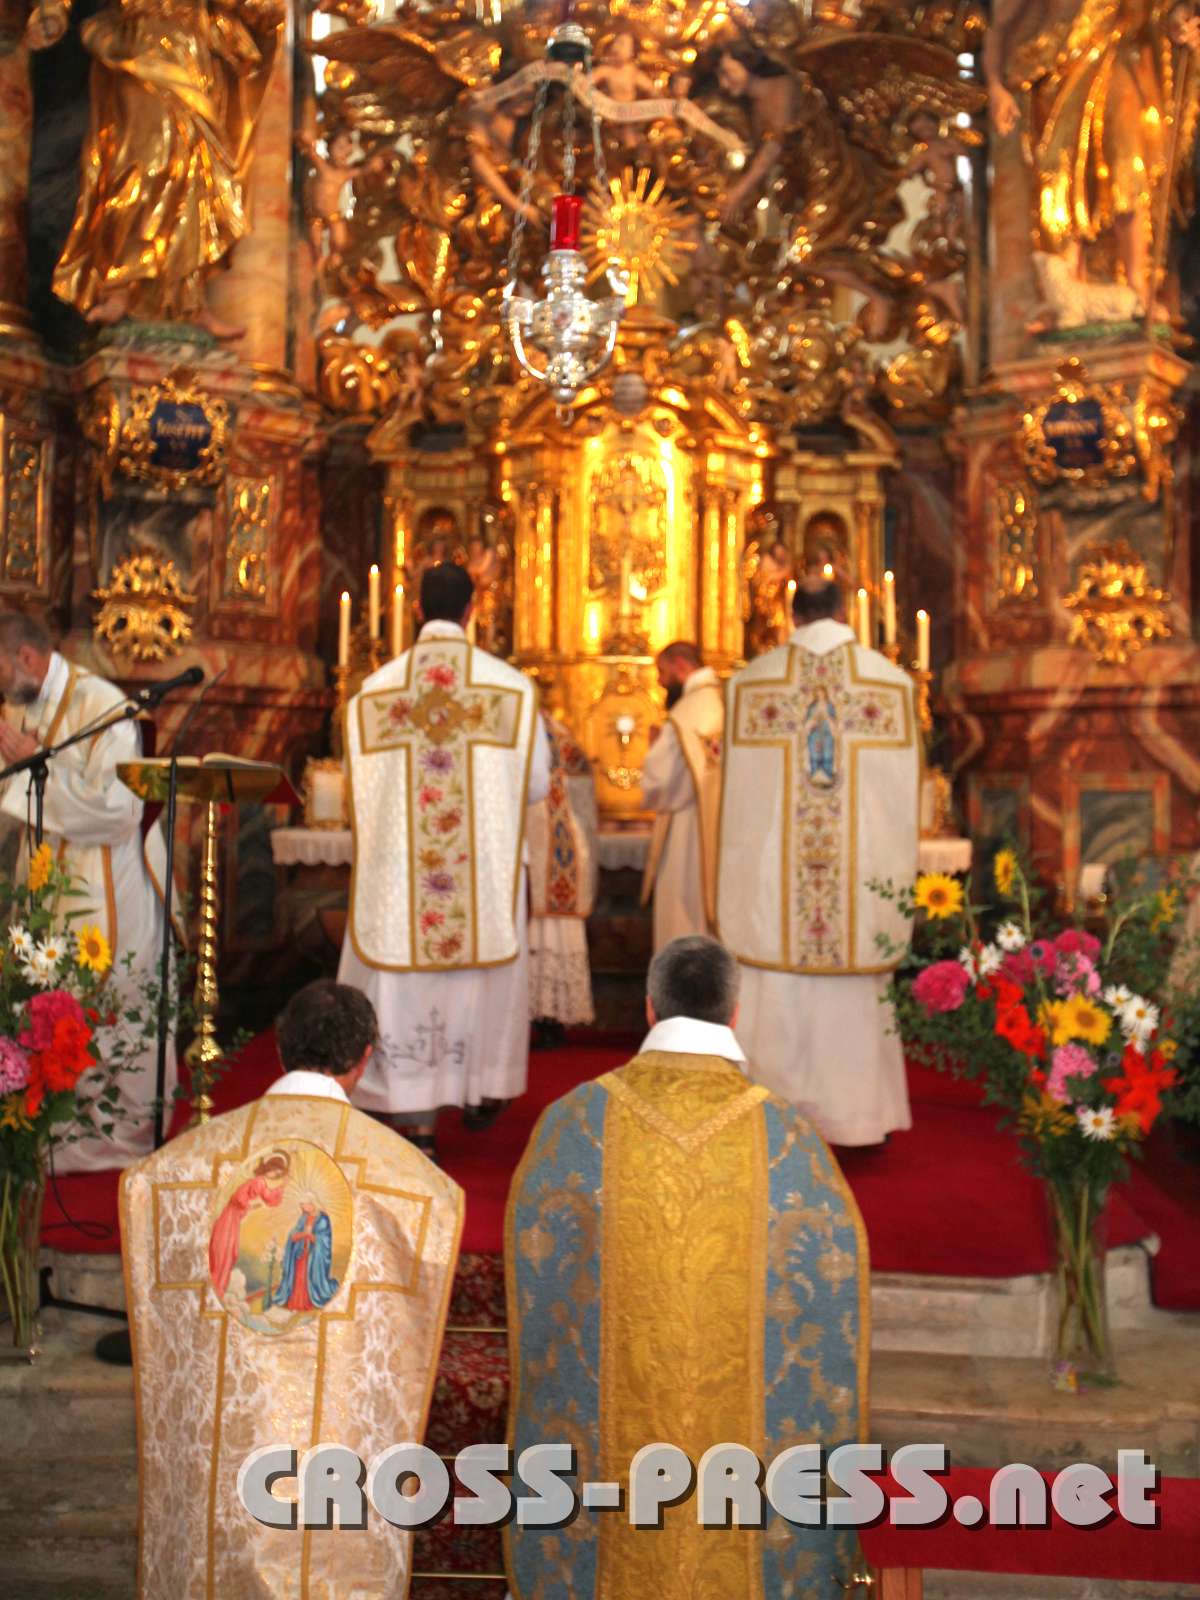 2010.07.24_11.32.12.jpg - Viele Priester zelebrieren die Messe am Samstag in der wunderschnen Wallfahrtskirche Pllauberg.